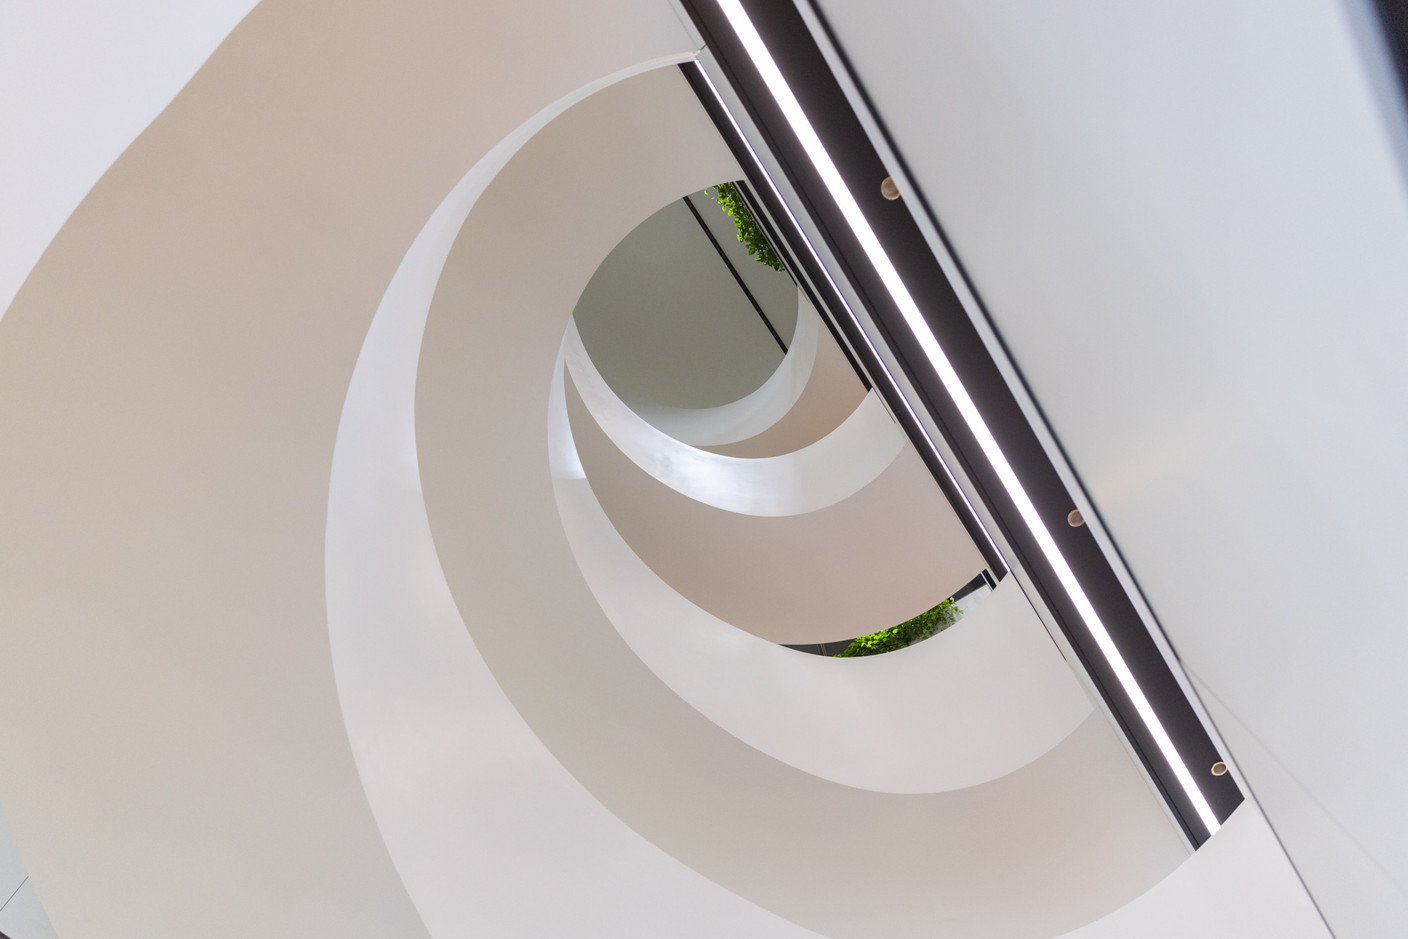 De forme elliptique, l’escalier a inspiré le nom du bâtiment. (Photo: Romain Gamba/Maison Moderne)